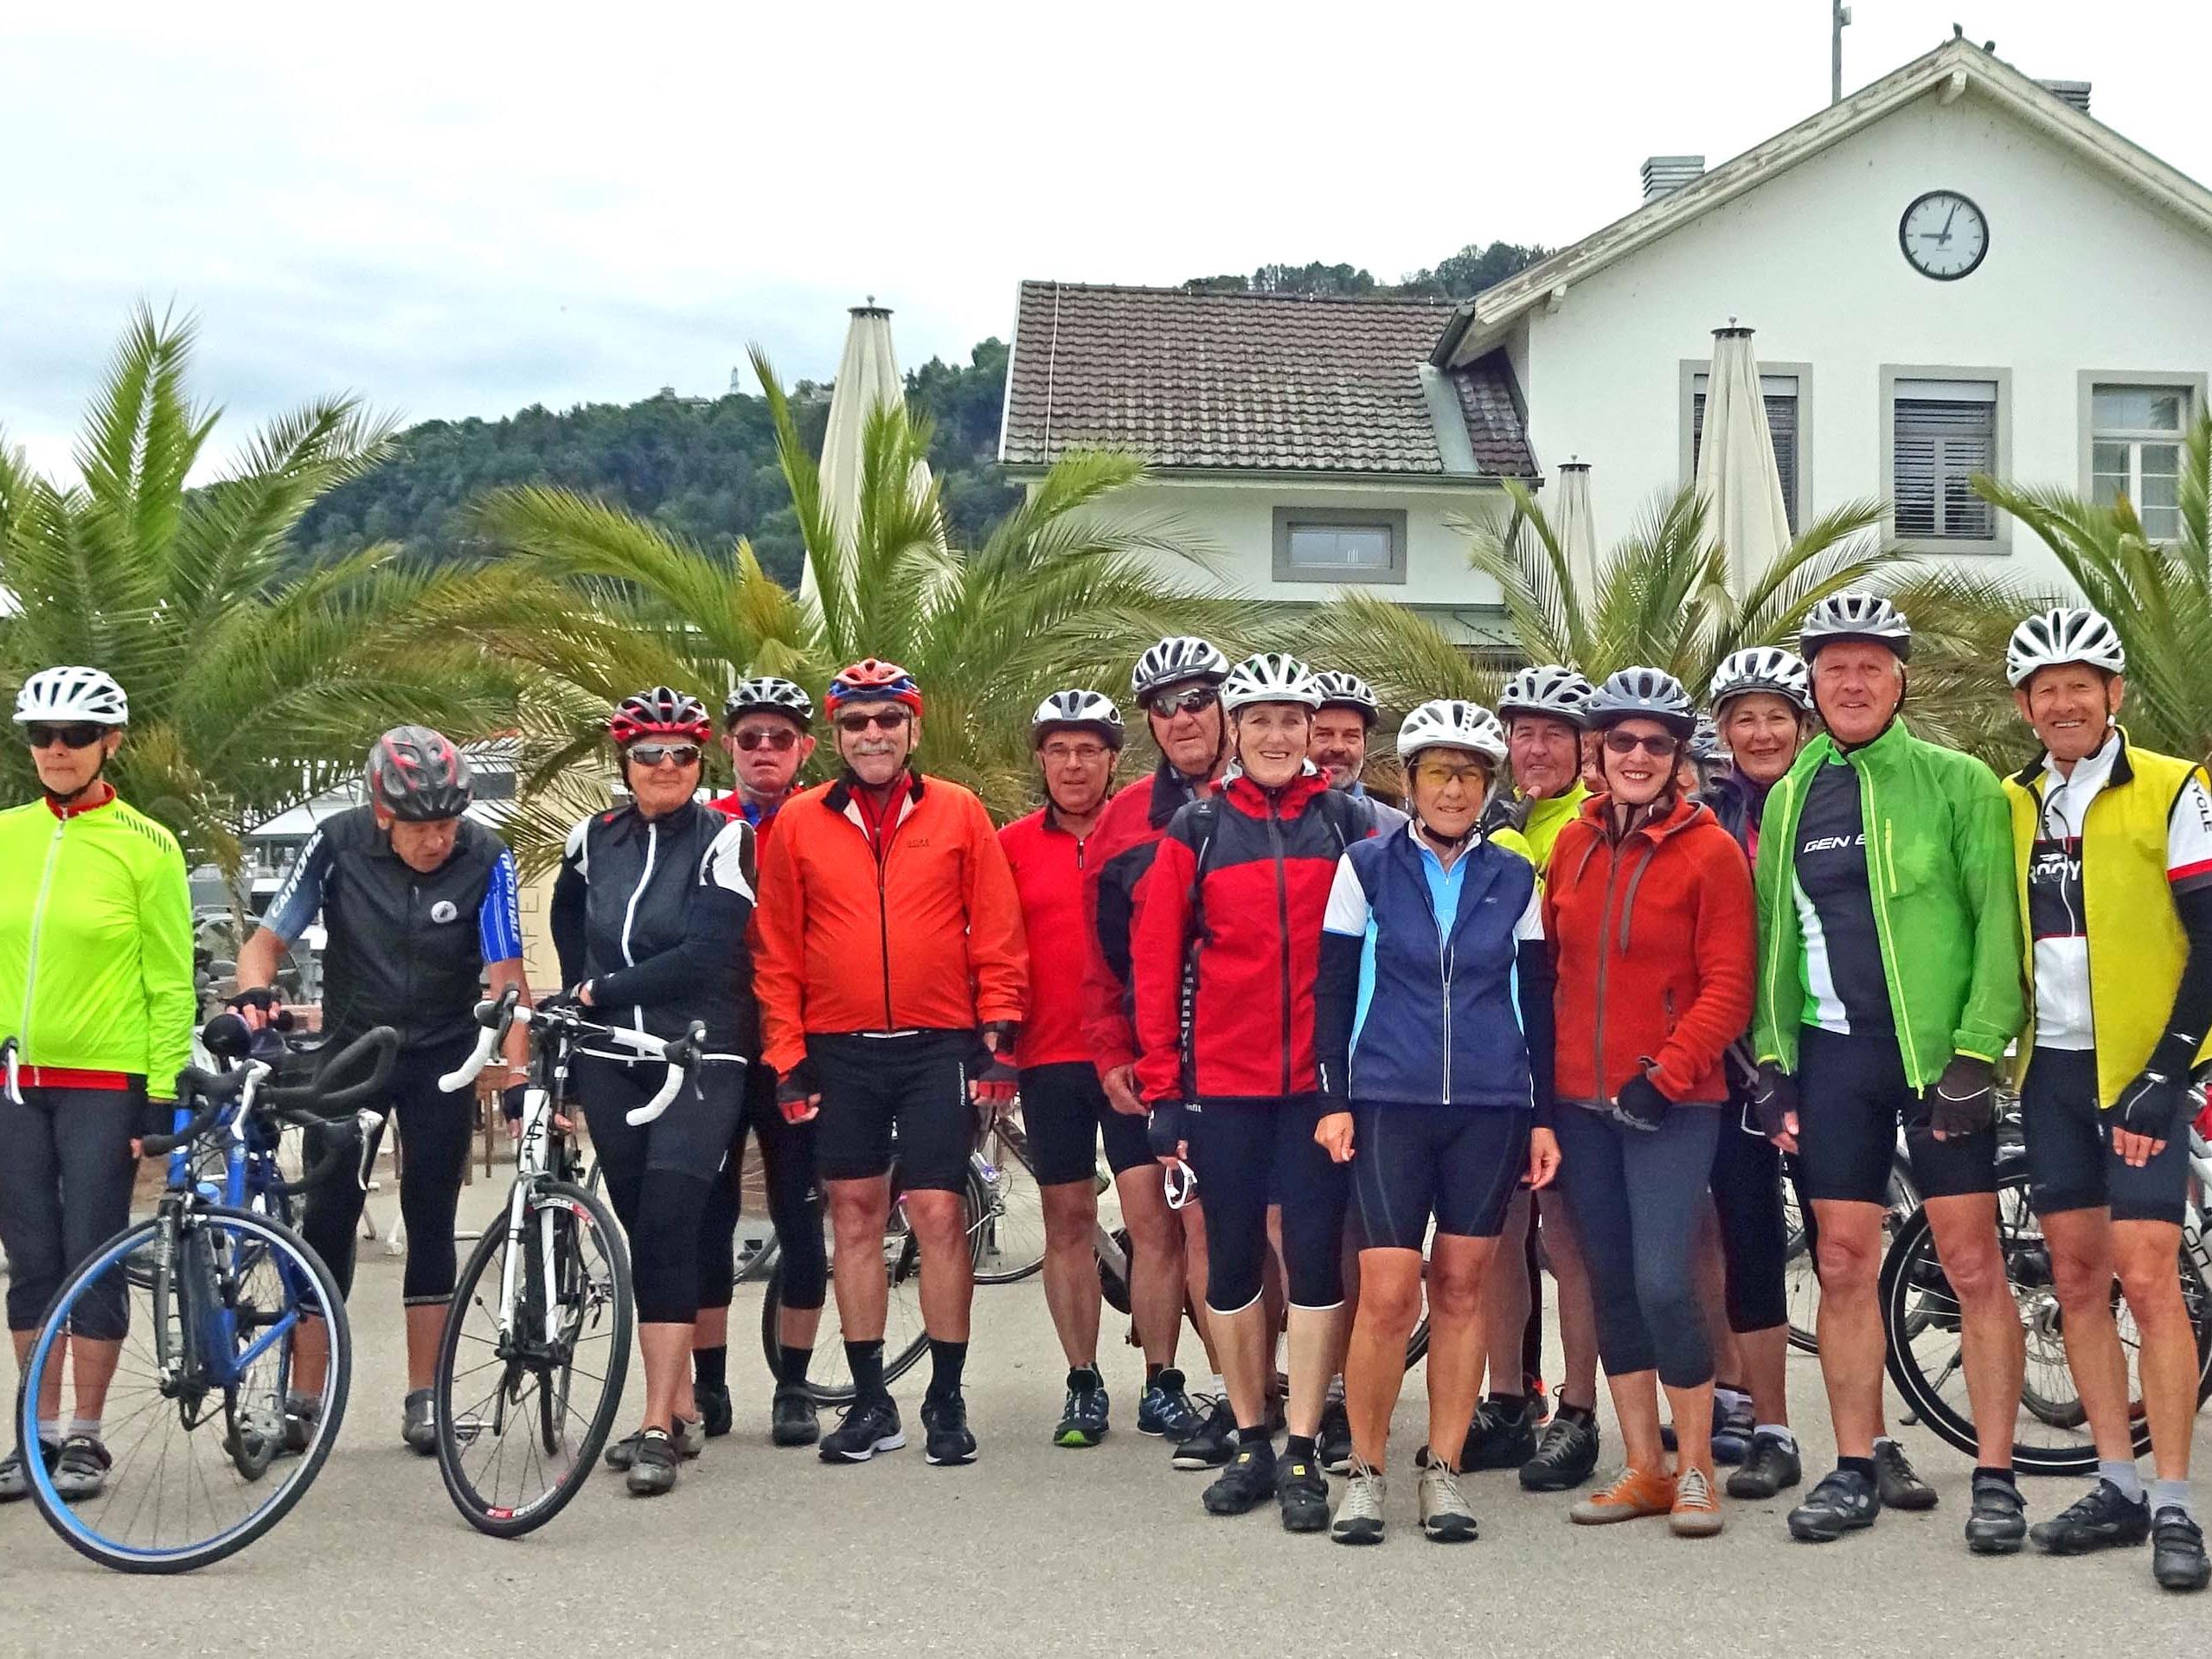 Radteam per pedales auf Obstgartentour nach Tettnang